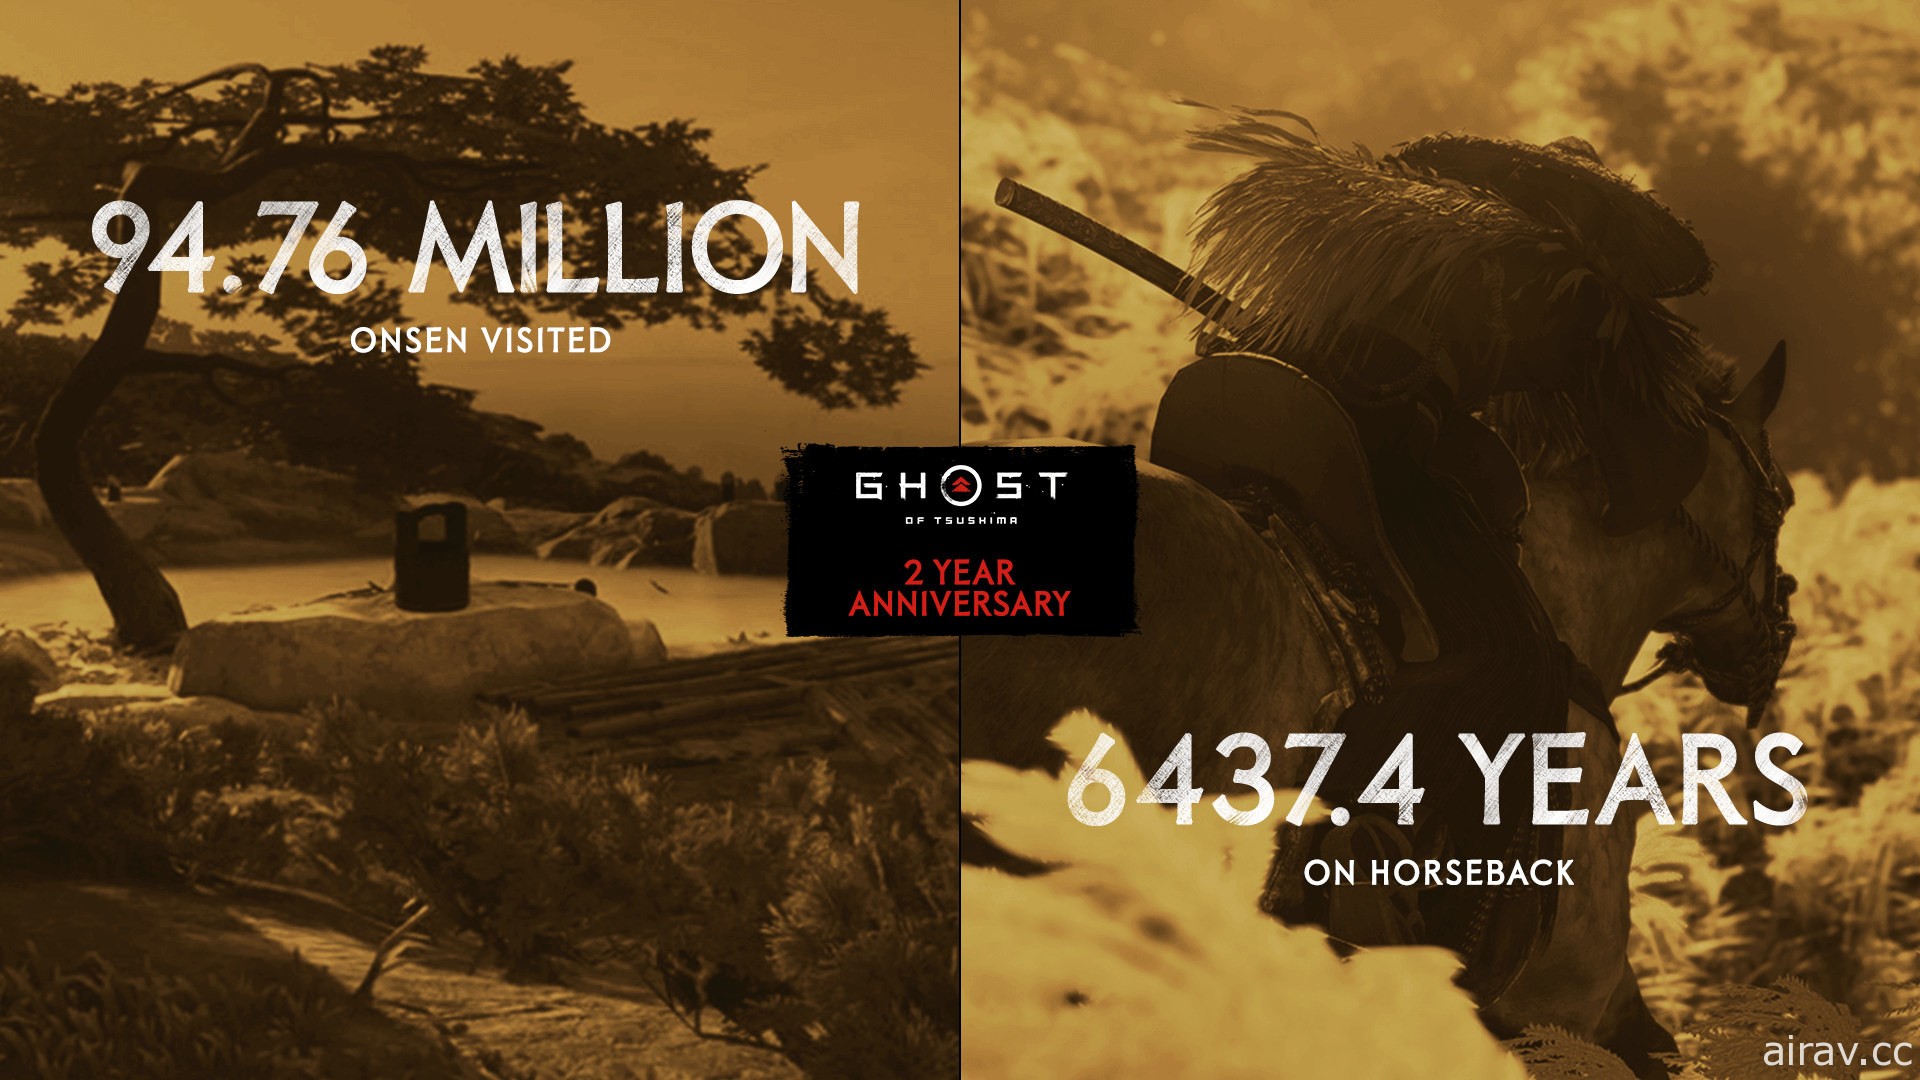 《对马战鬼》上市届满 2 周年销售突破 973 万套 官方公布最新游玩统计数据